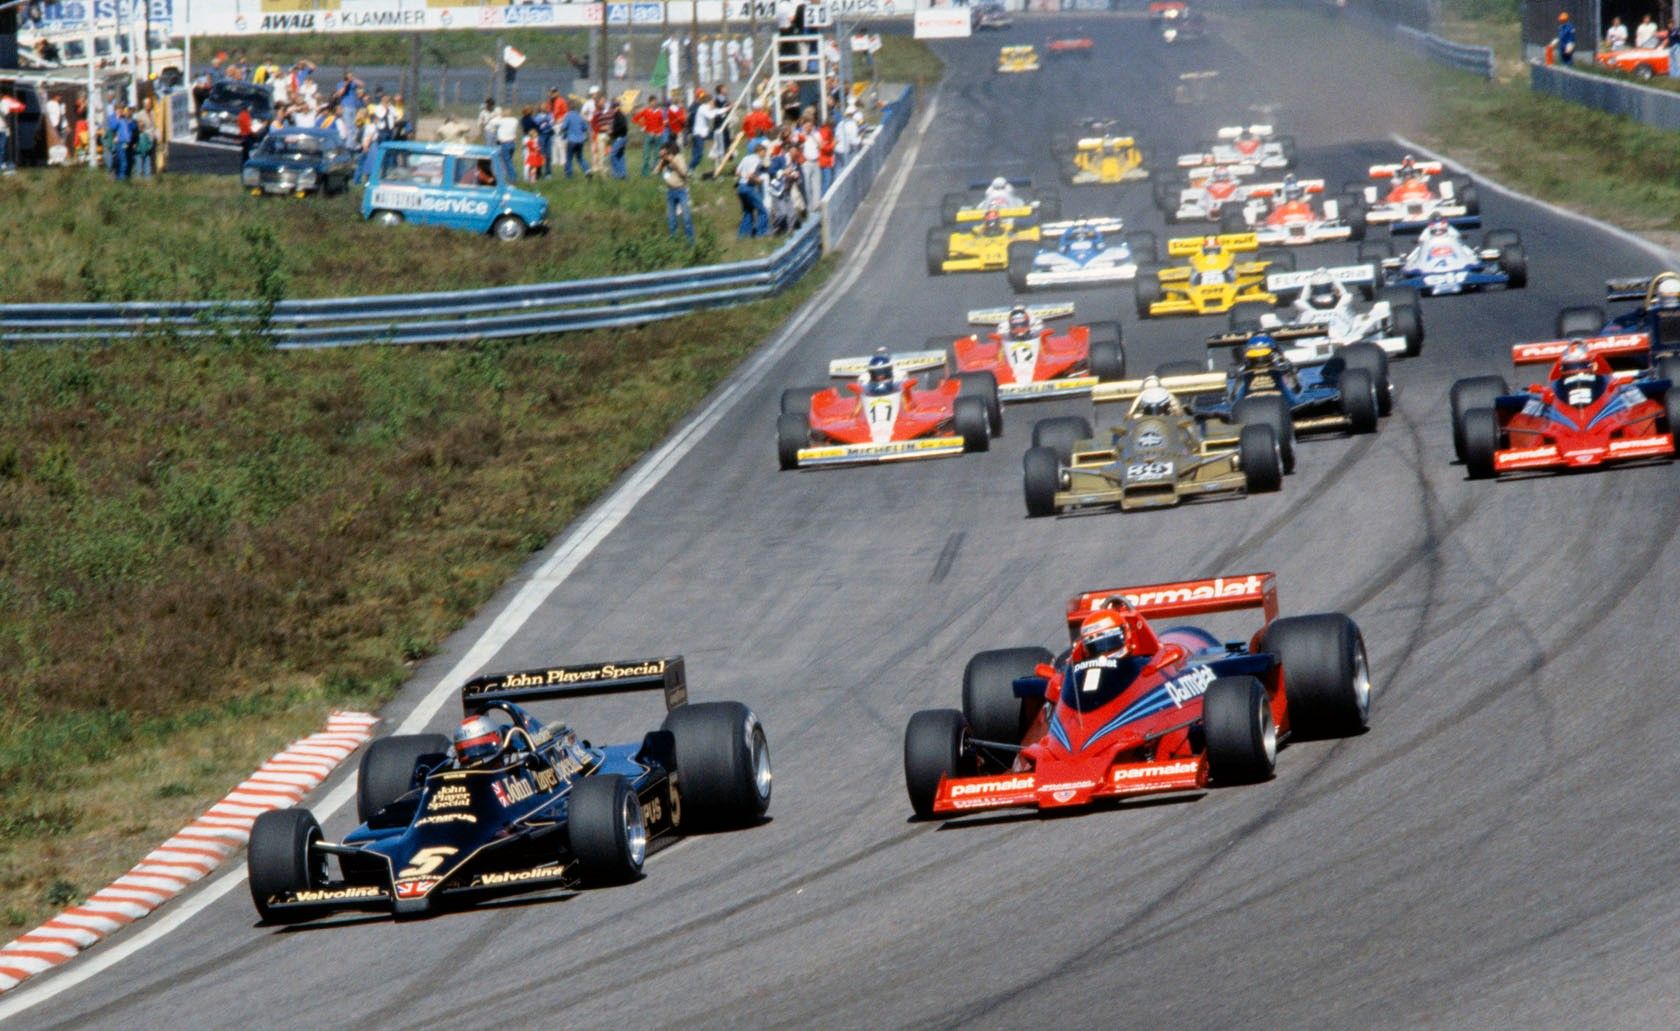 1978 Swedish Grand Prix Race Start